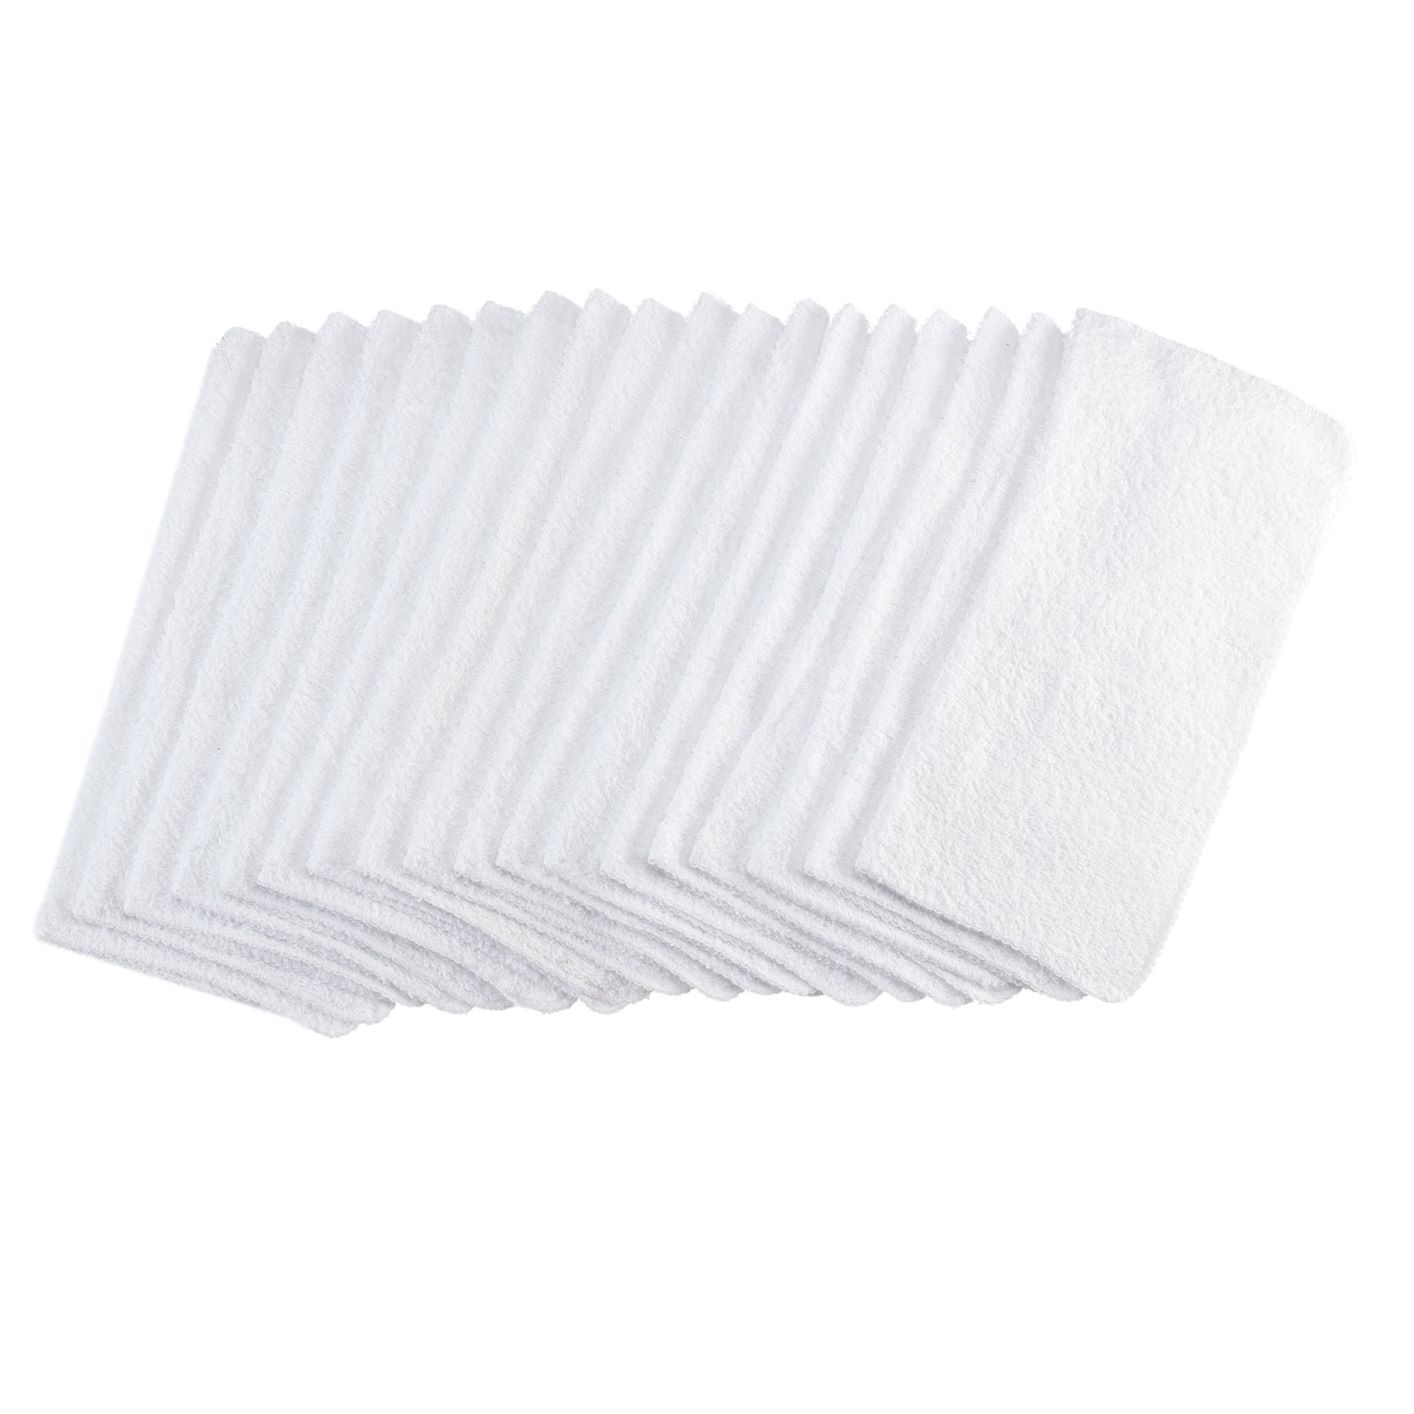 Mainstays 18-Pack Washcloth Bundle, White - image 1 of 23